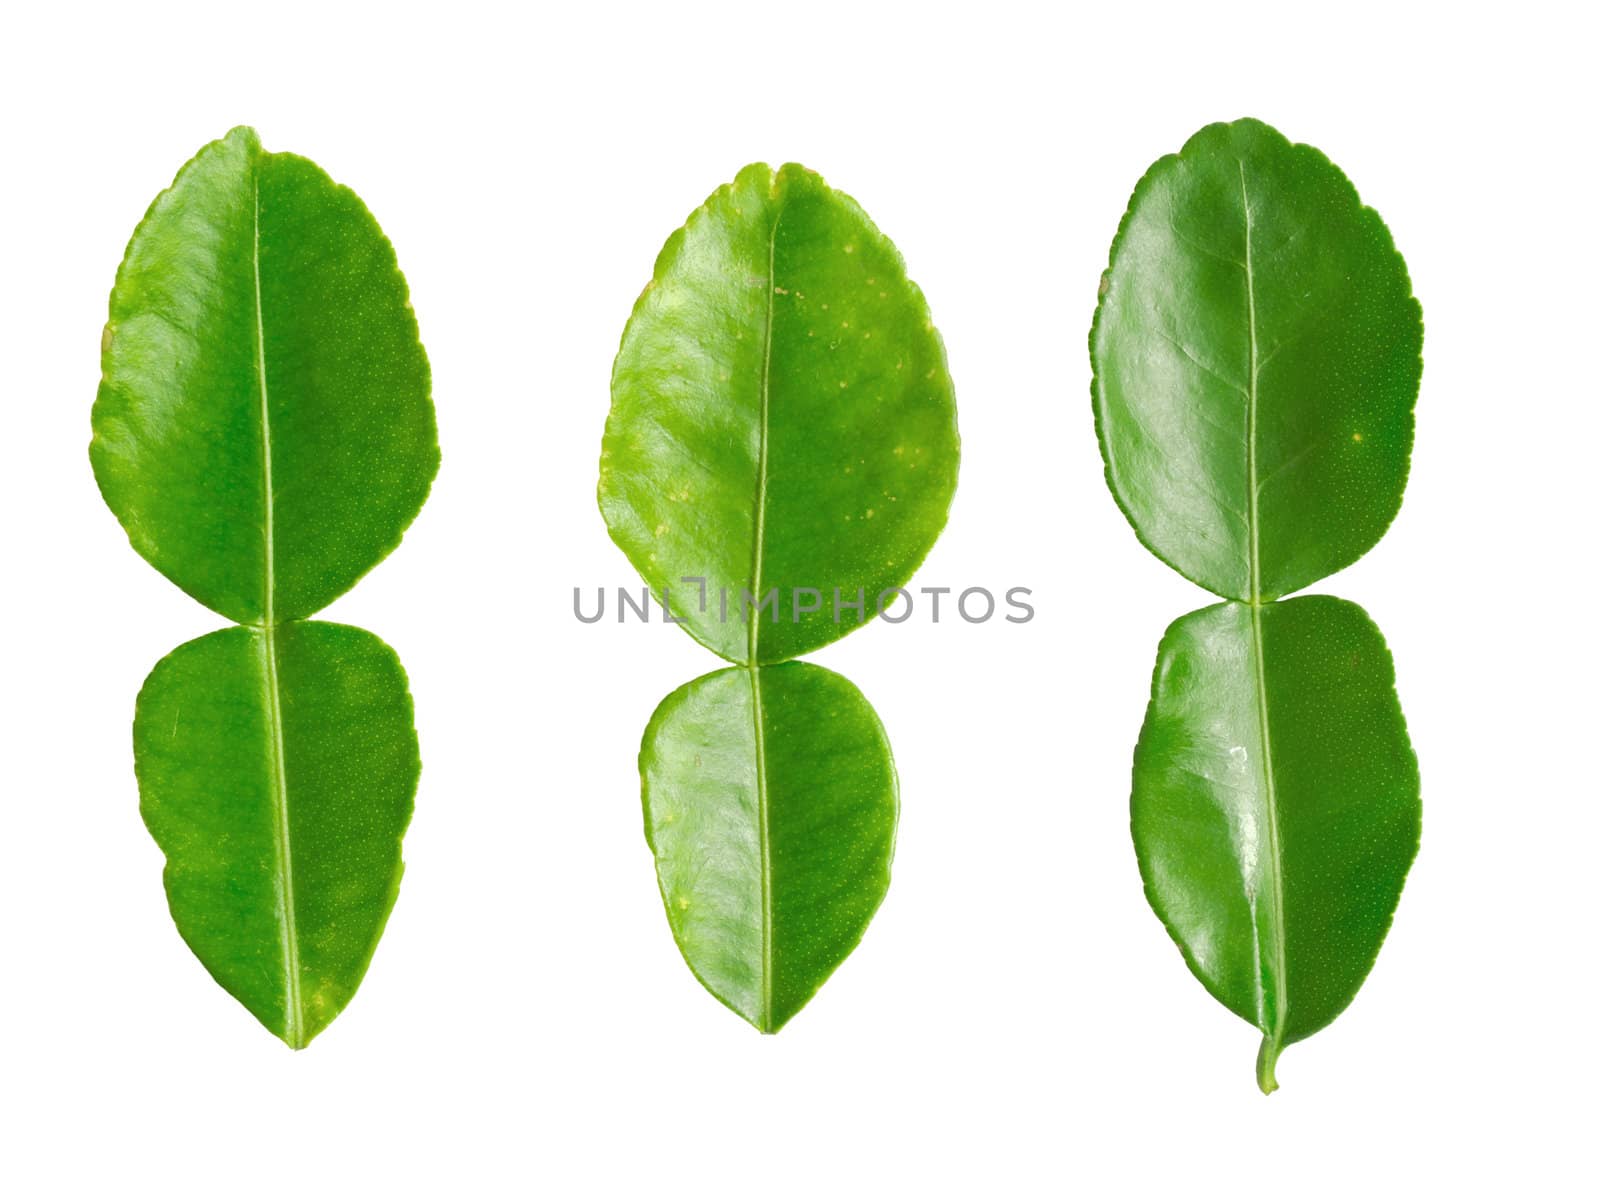 kaffir lime leaves by zkruger